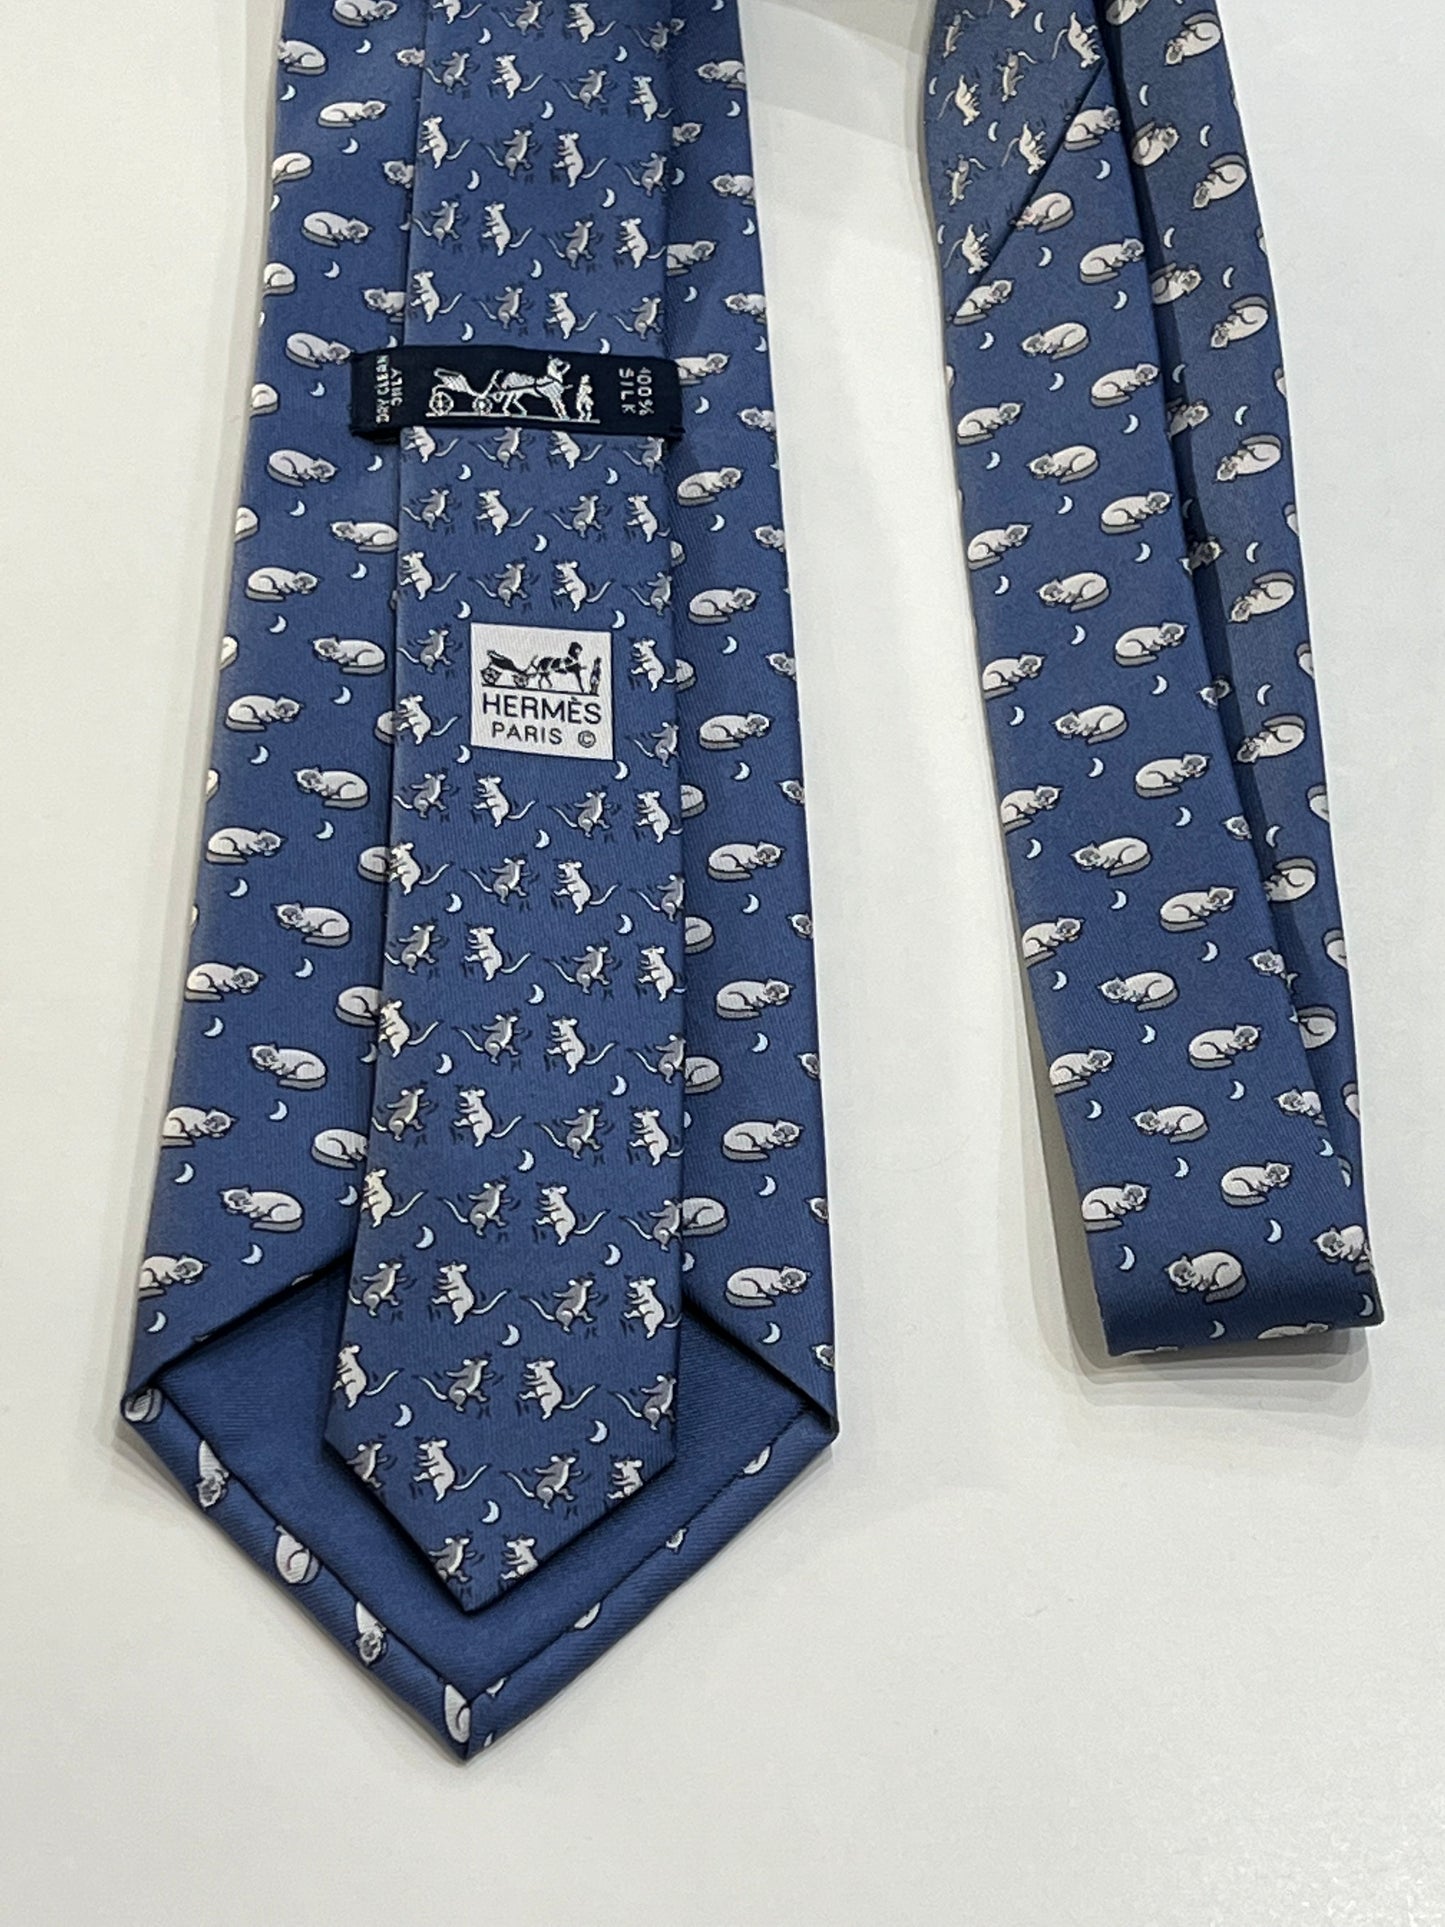 Cravatta Hermès con gatti e topi